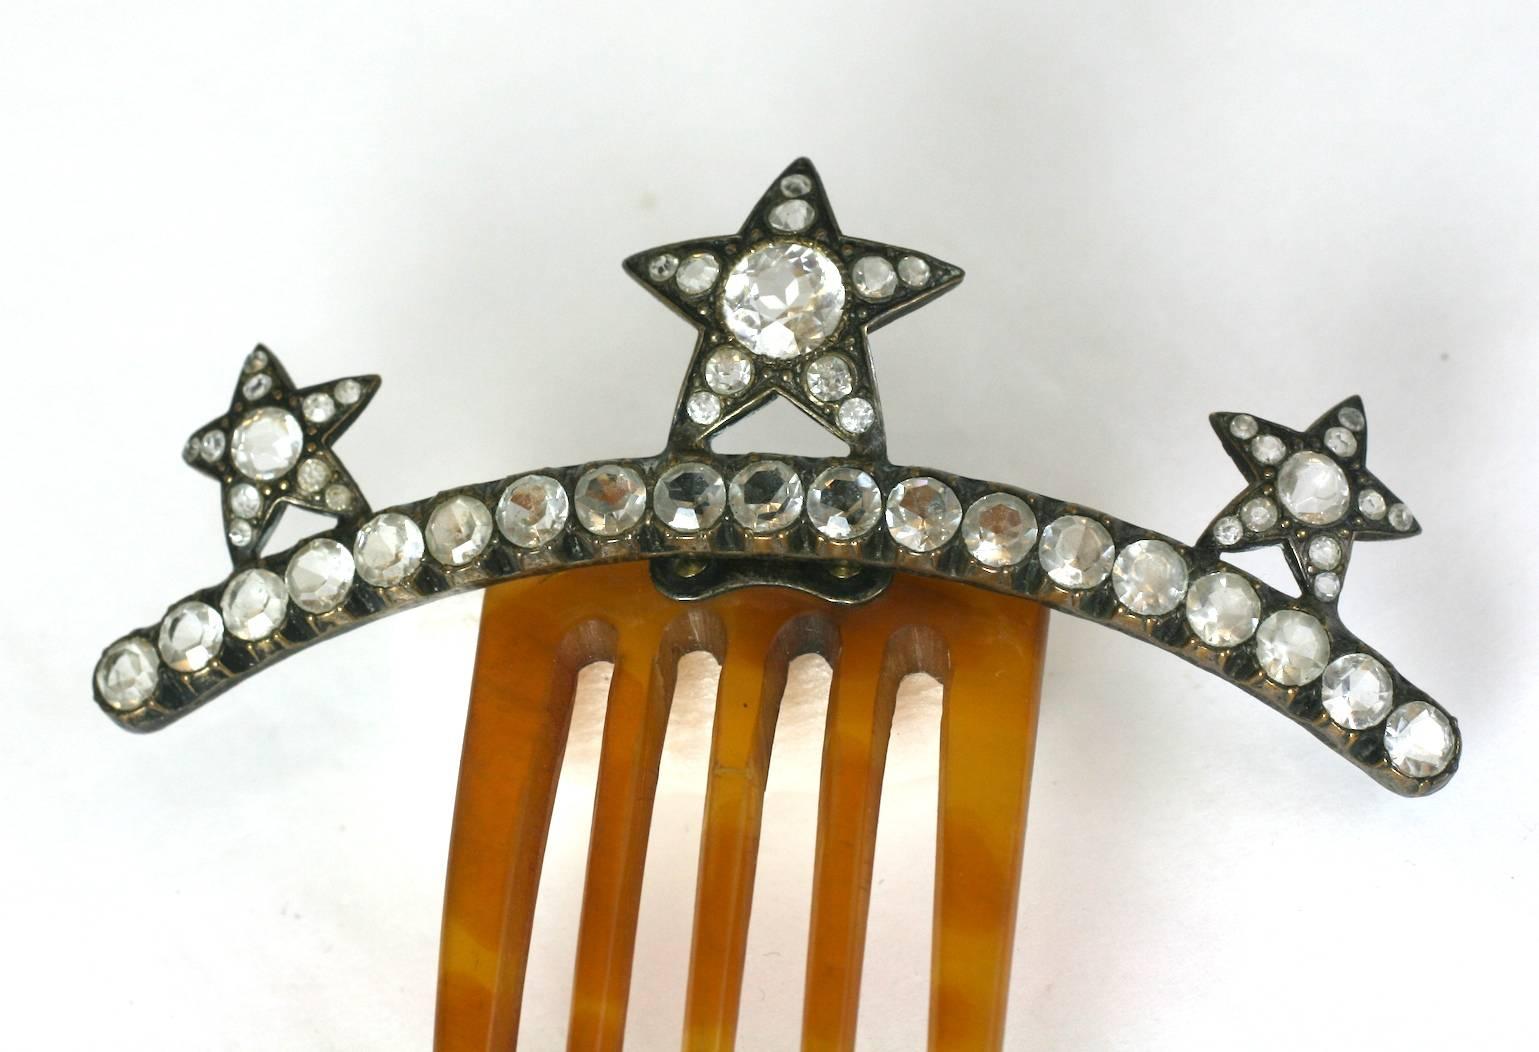 Viktorianische Hand facettierten Kristall Paste und Horn Haarkamm, von drei fünf spitzen Sternen in Sterling Silber gesetzt. Typisch viktorianisch und schön im Konzept.
Ausgezeichneter Zustand, Frankreich der 1860er Jahre.
Bitte beachten Sie: